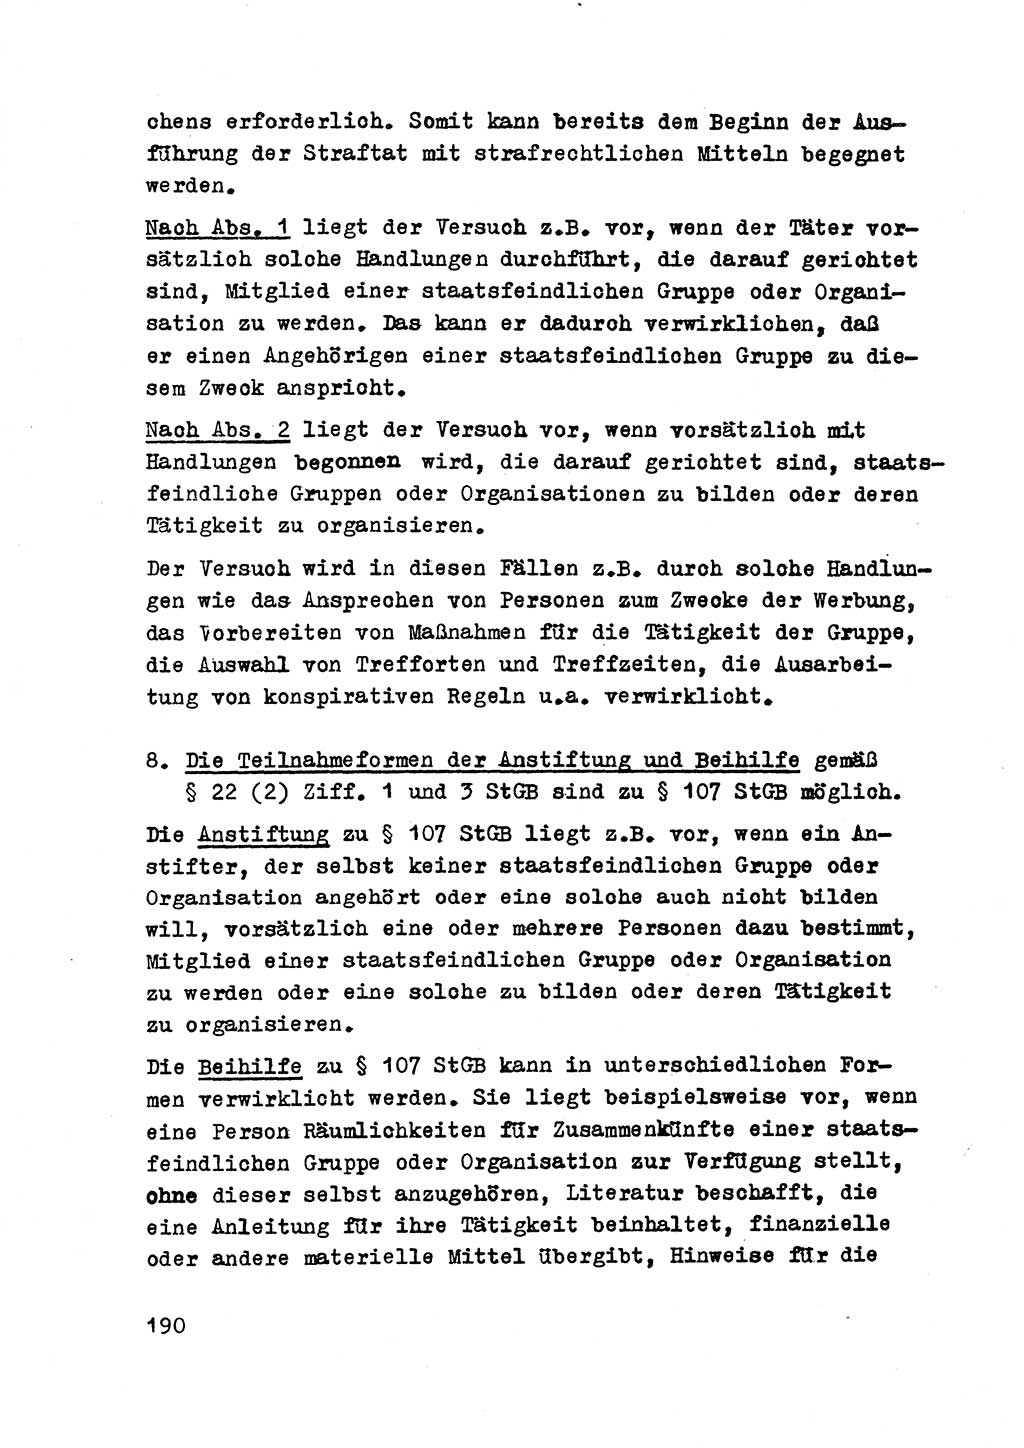 Strafrecht der DDR (Deutsche Demokratische Republik), Besonderer Teil, Lehrmaterial, Heft 2 1969, Seite 190 (Strafr. DDR BT Lehrmat. H. 2 1969, S. 190)